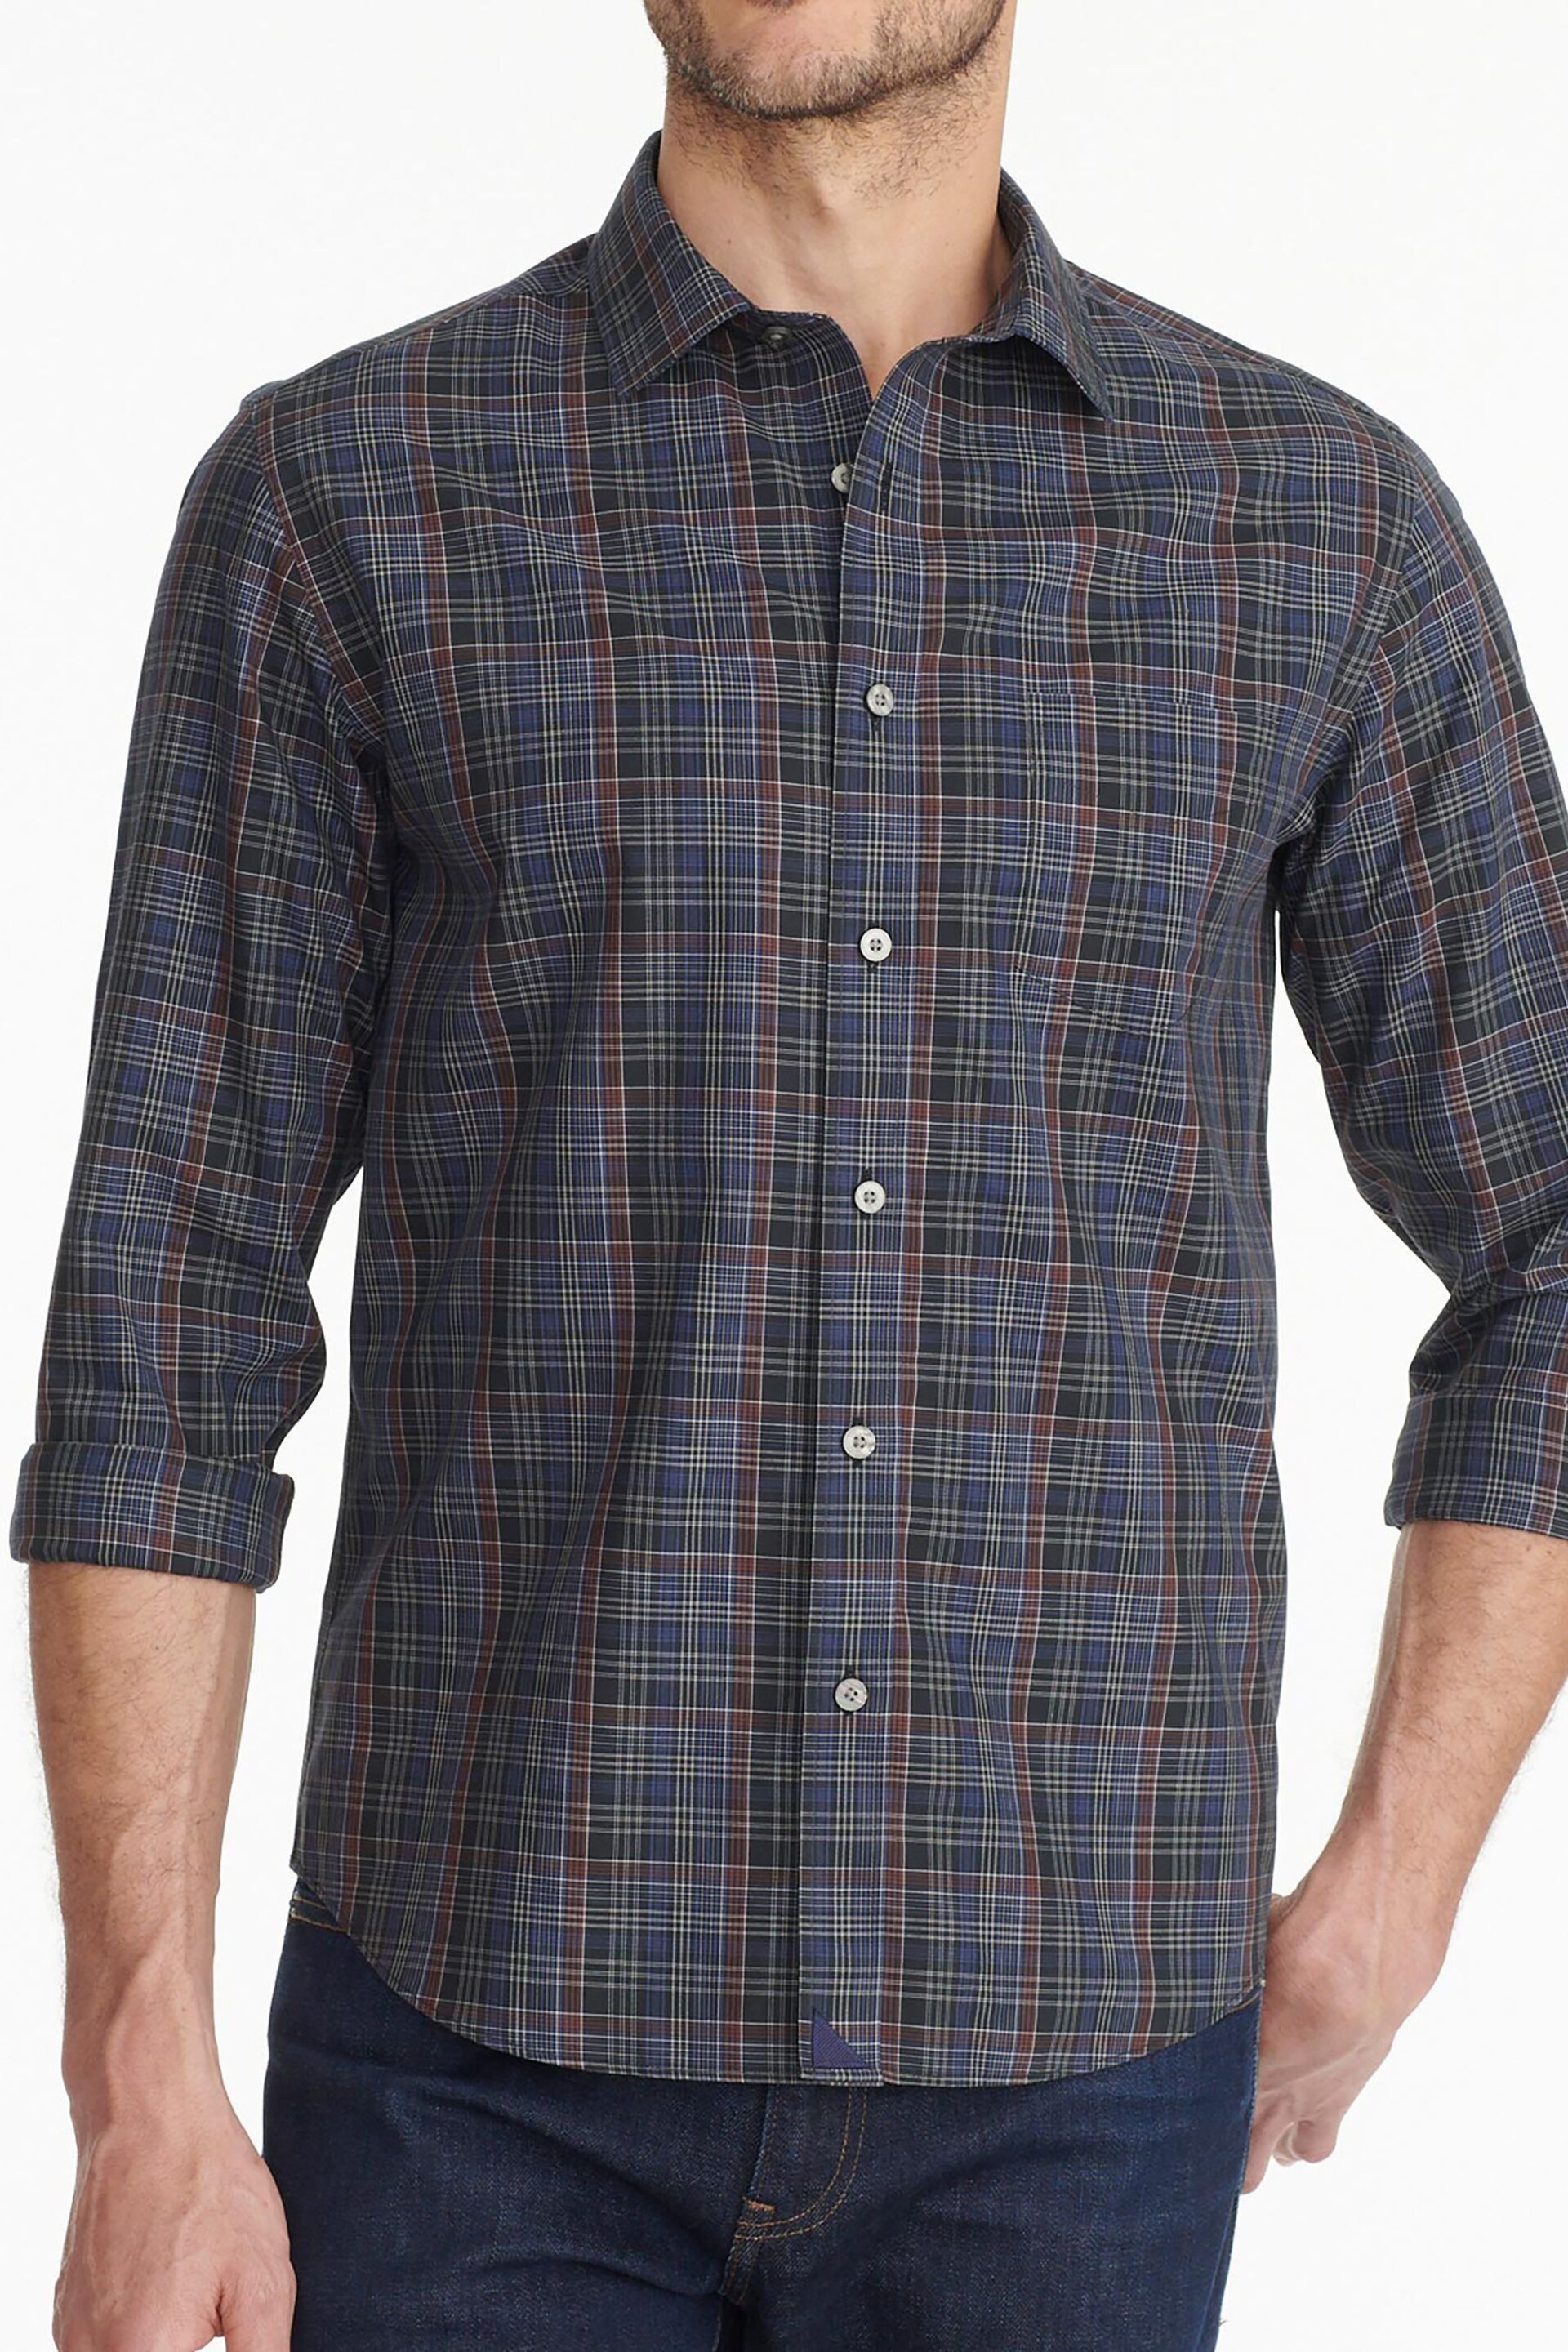 UNTUCKit Blue Dark Wrinkle-Free Slim Fit Cordero Shirt - Image 1 of 5